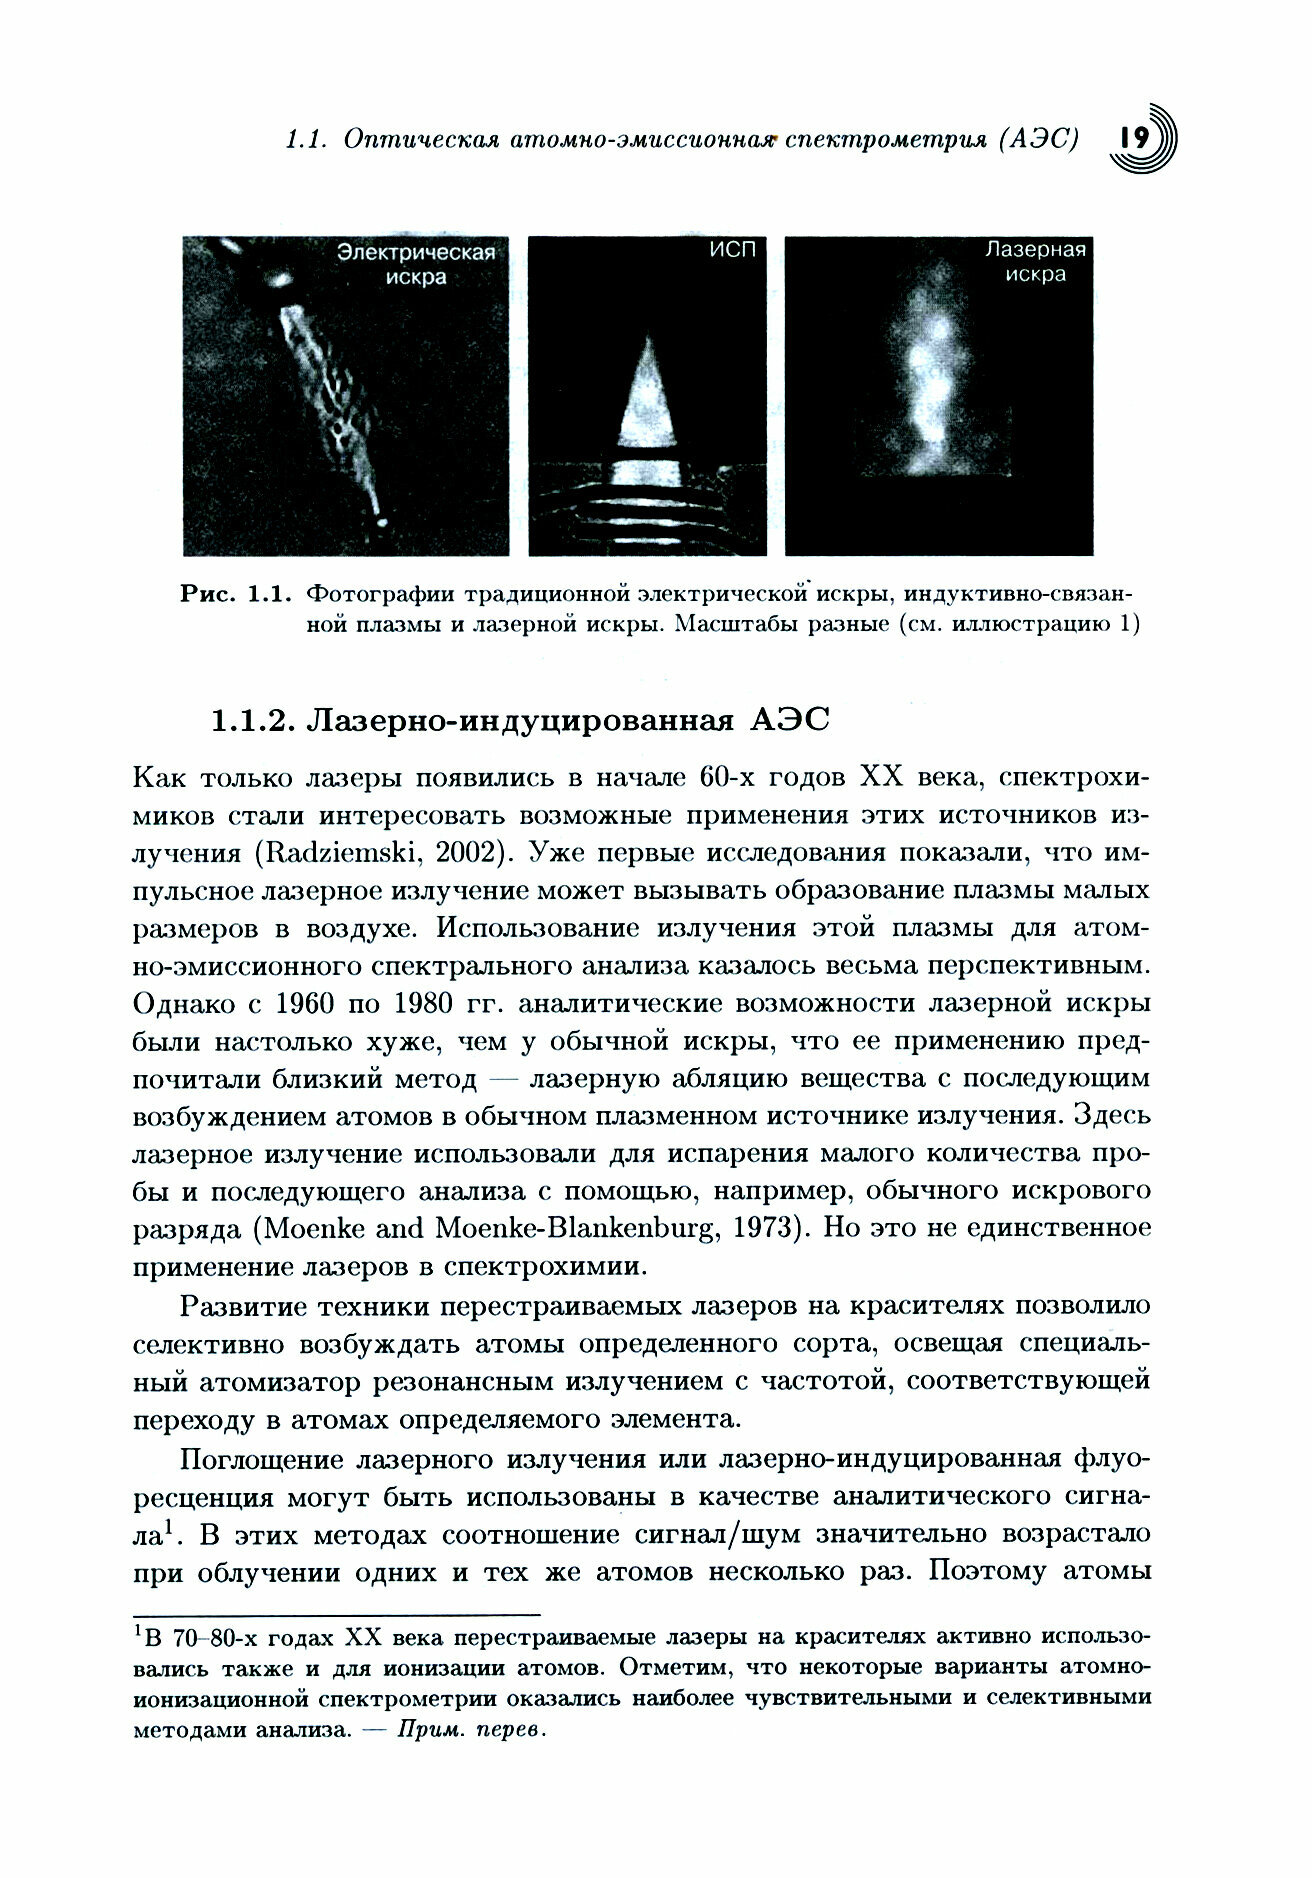 Лазерно-искровая эмиссионная спектроскопия - фото №5